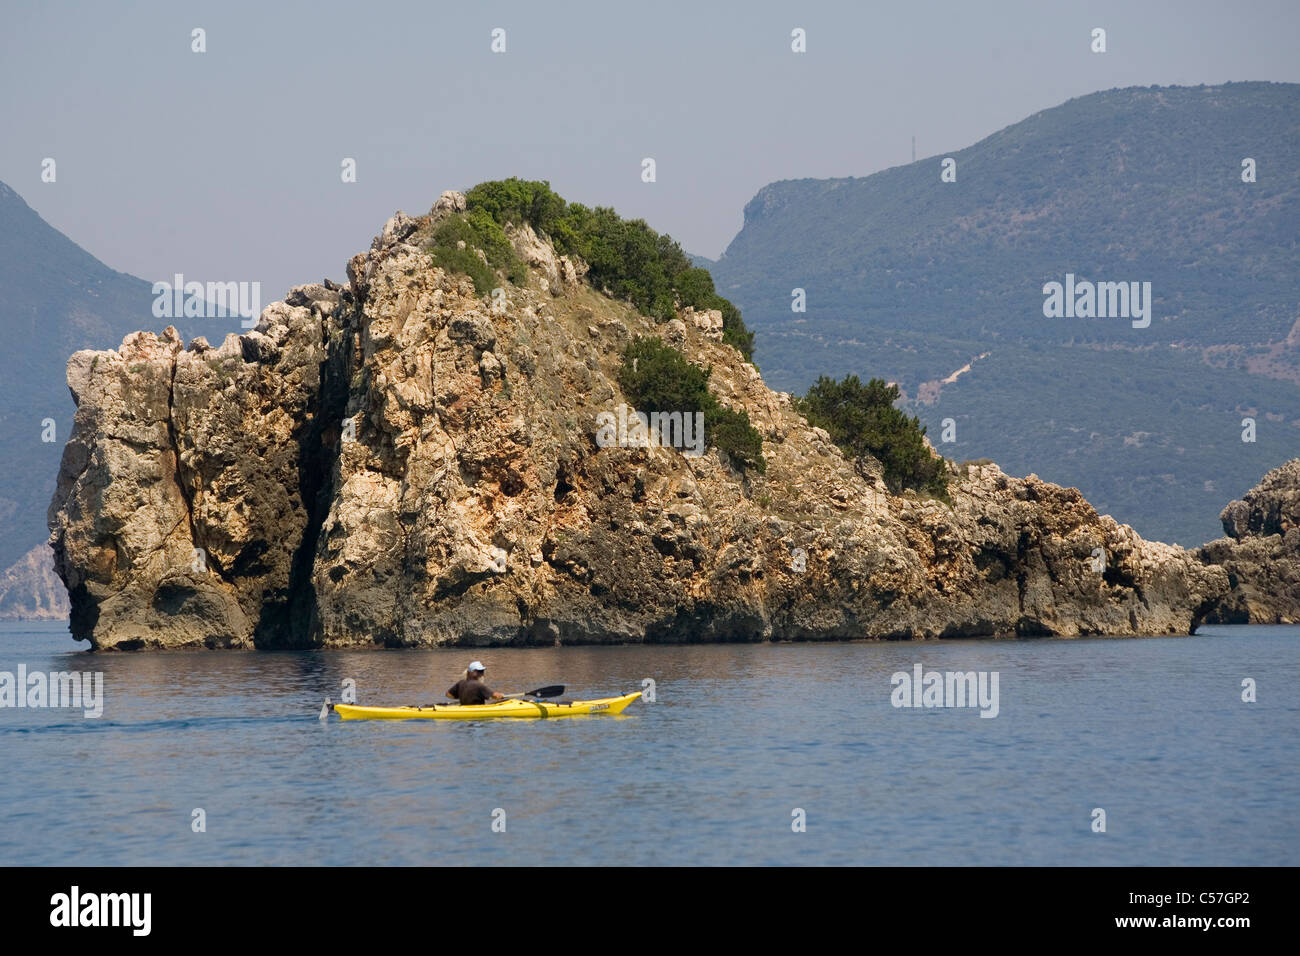 Grecia Ammoudia Epiros kayak & rock coast Foto Stock